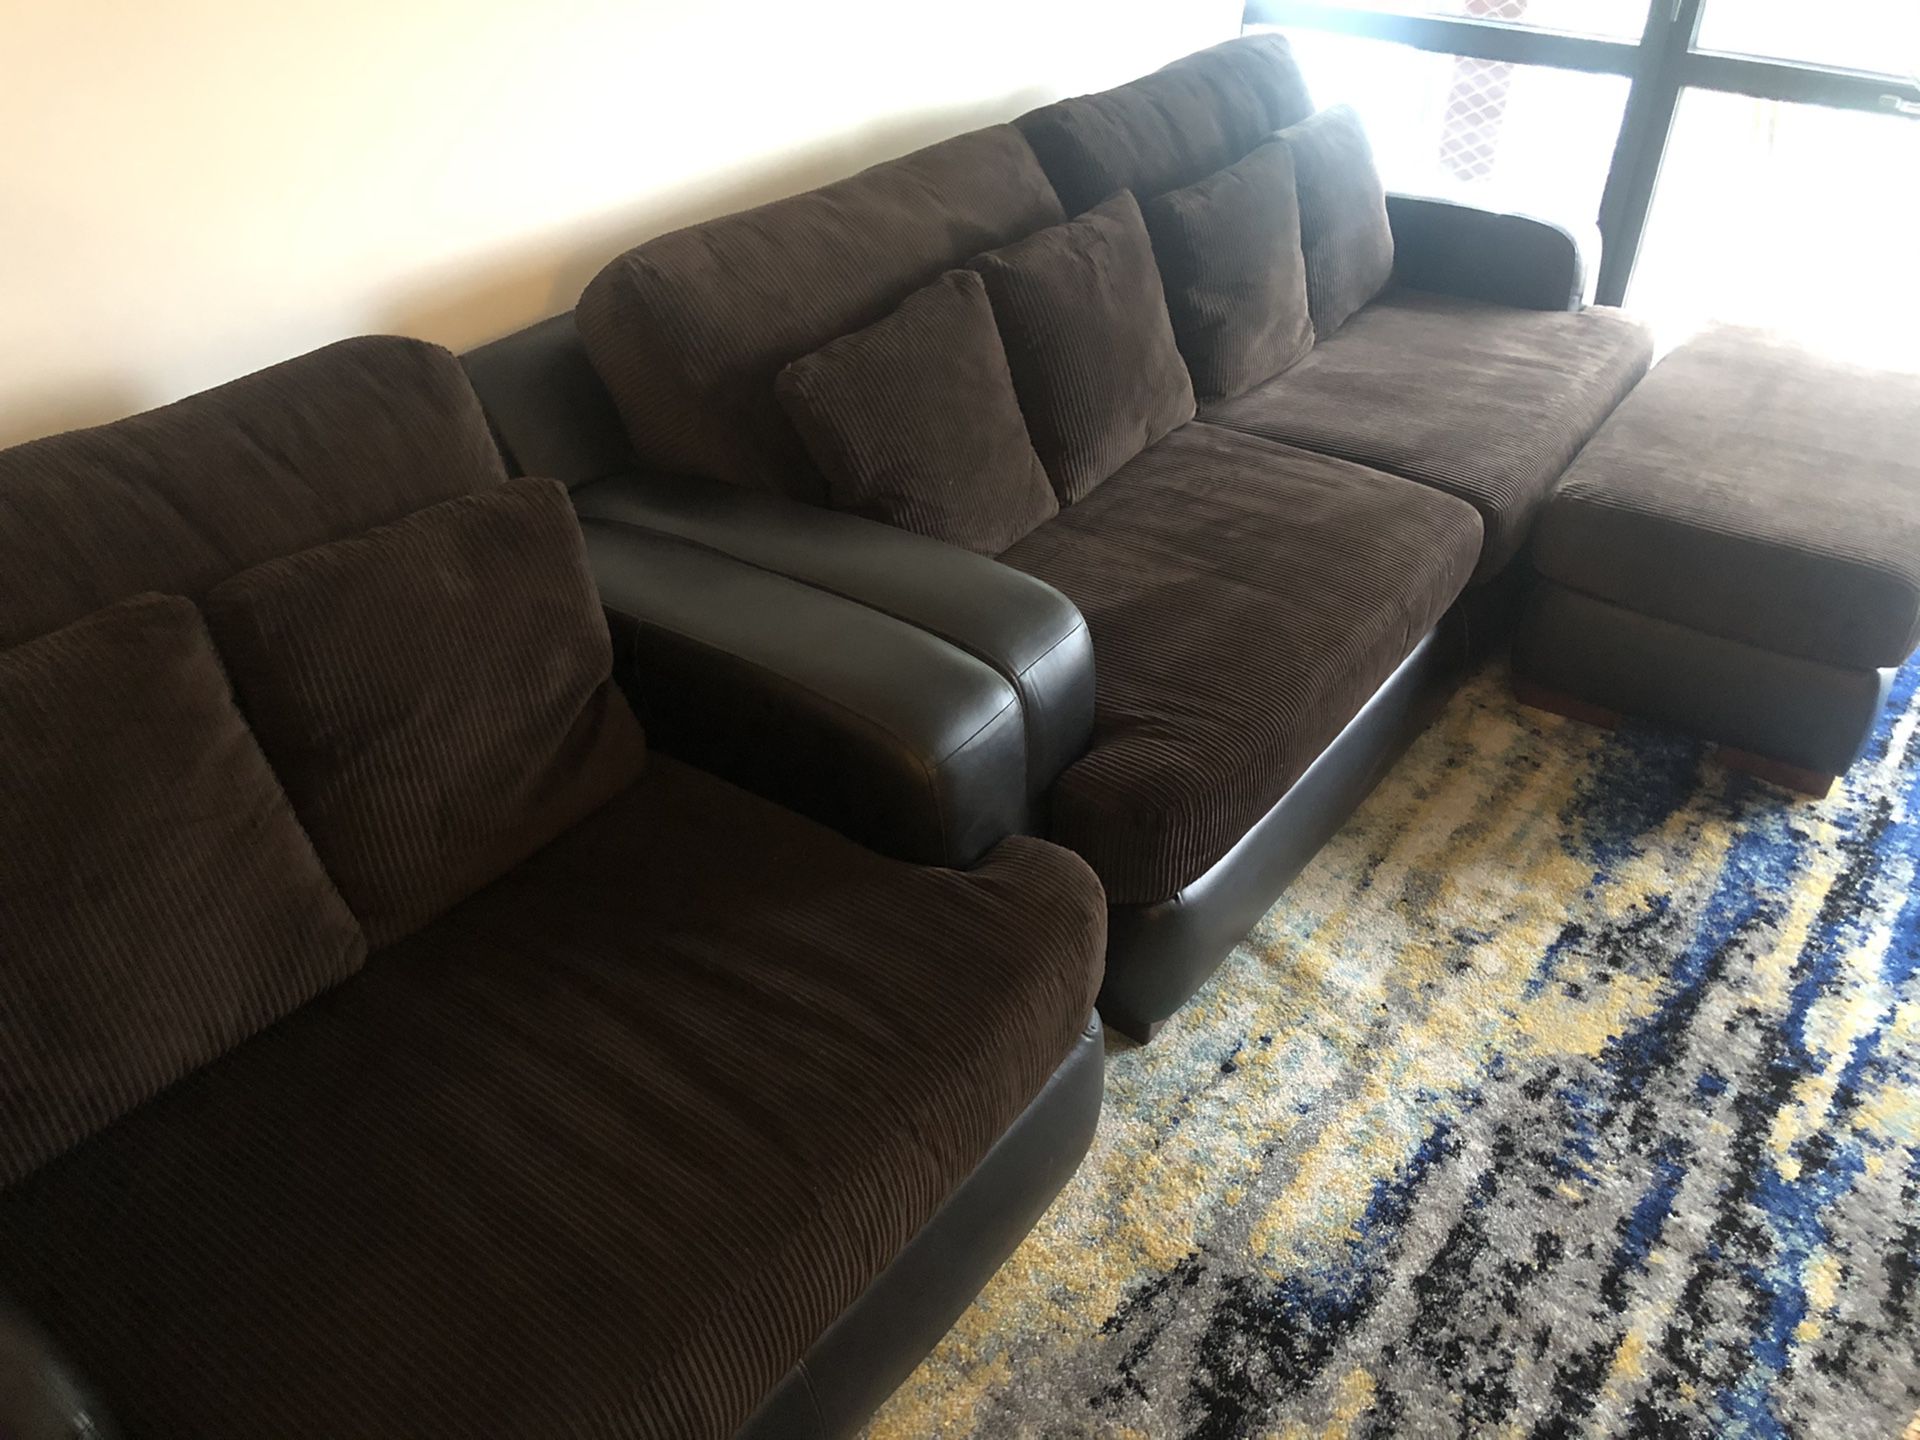 Sofa, chair, and ottoman